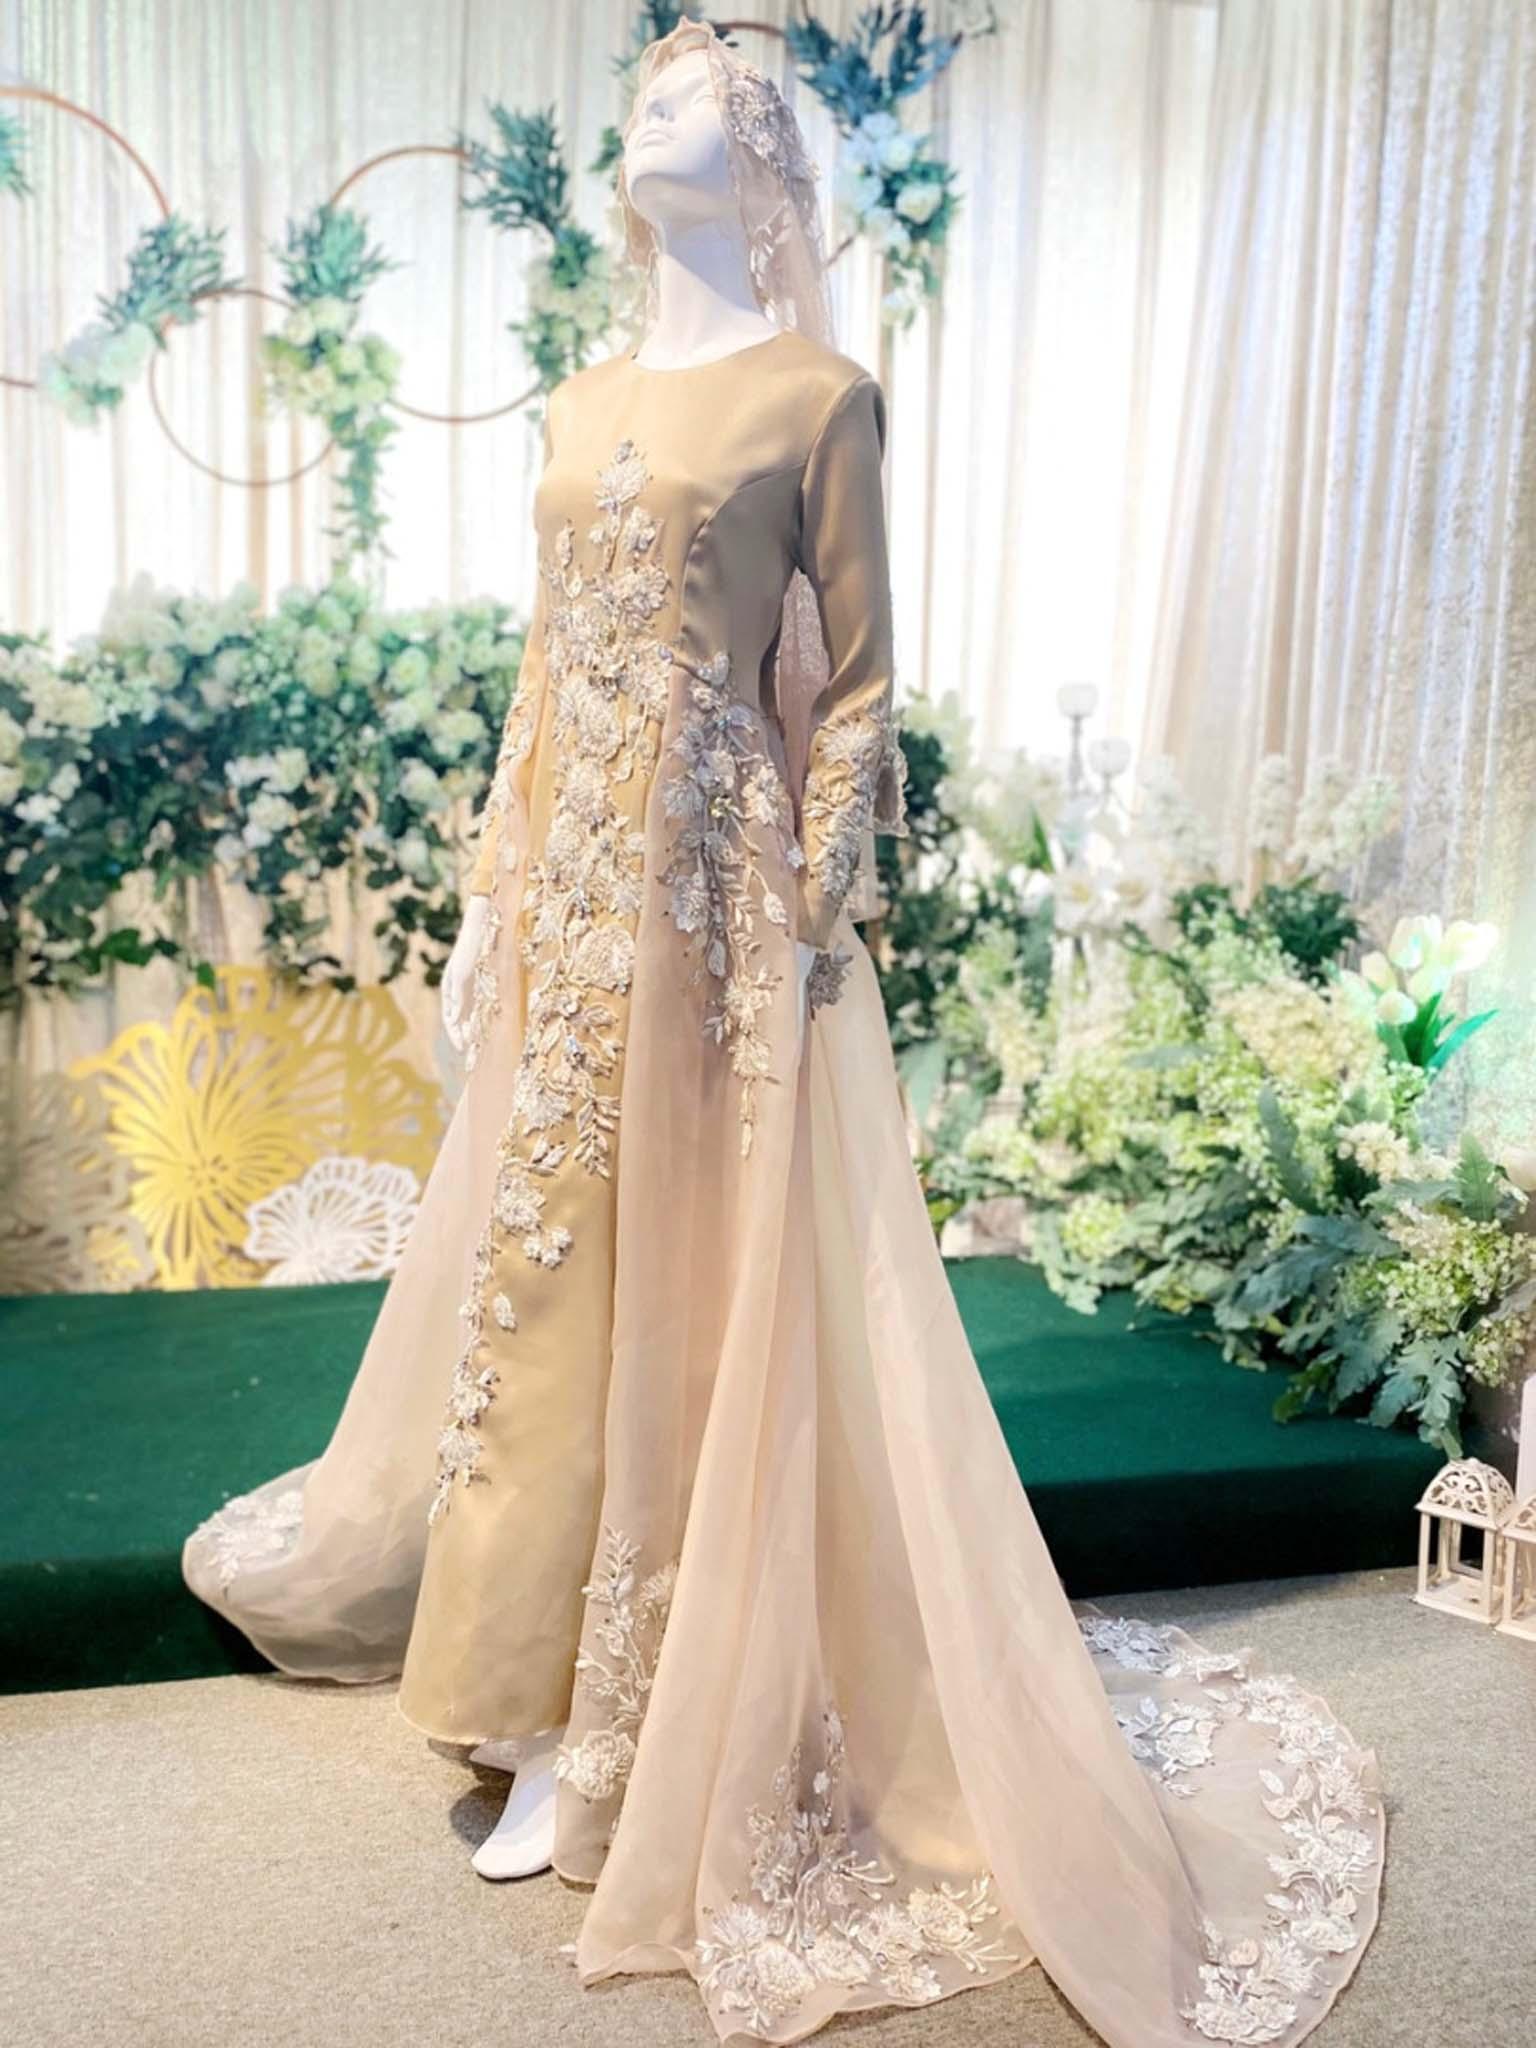 Sewa Baju Pengantin Muslimah Dress with Trail, Duchess Dusty Champagne by PP Signature Bridal Boutique-Malay Wedding Dress